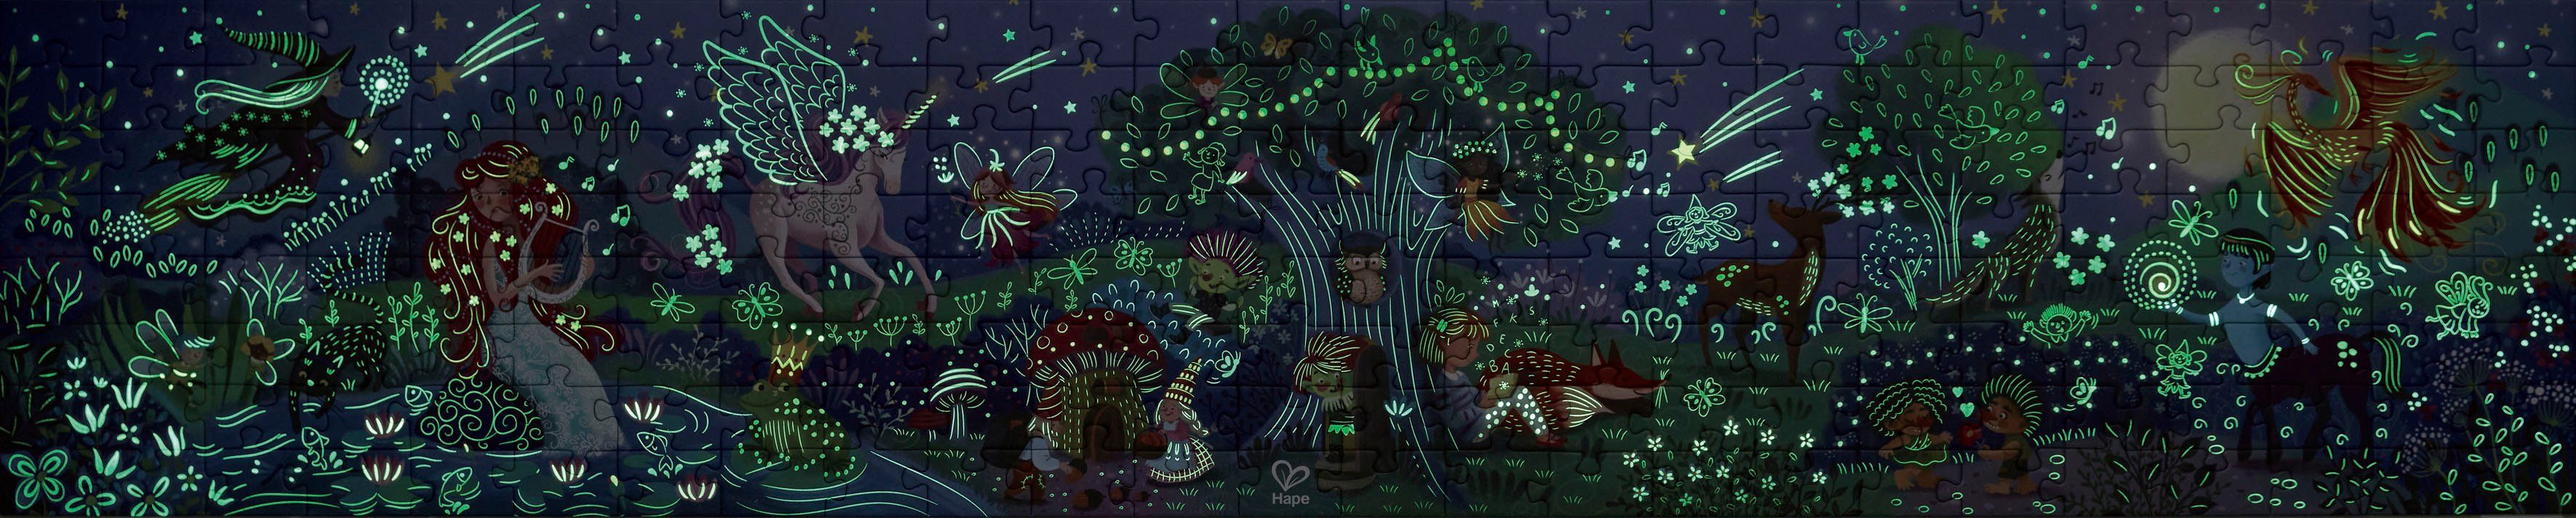 Hape Puzzle Wald der Wunder, 200 im leuchtet Puzzleteile, Dunkeln